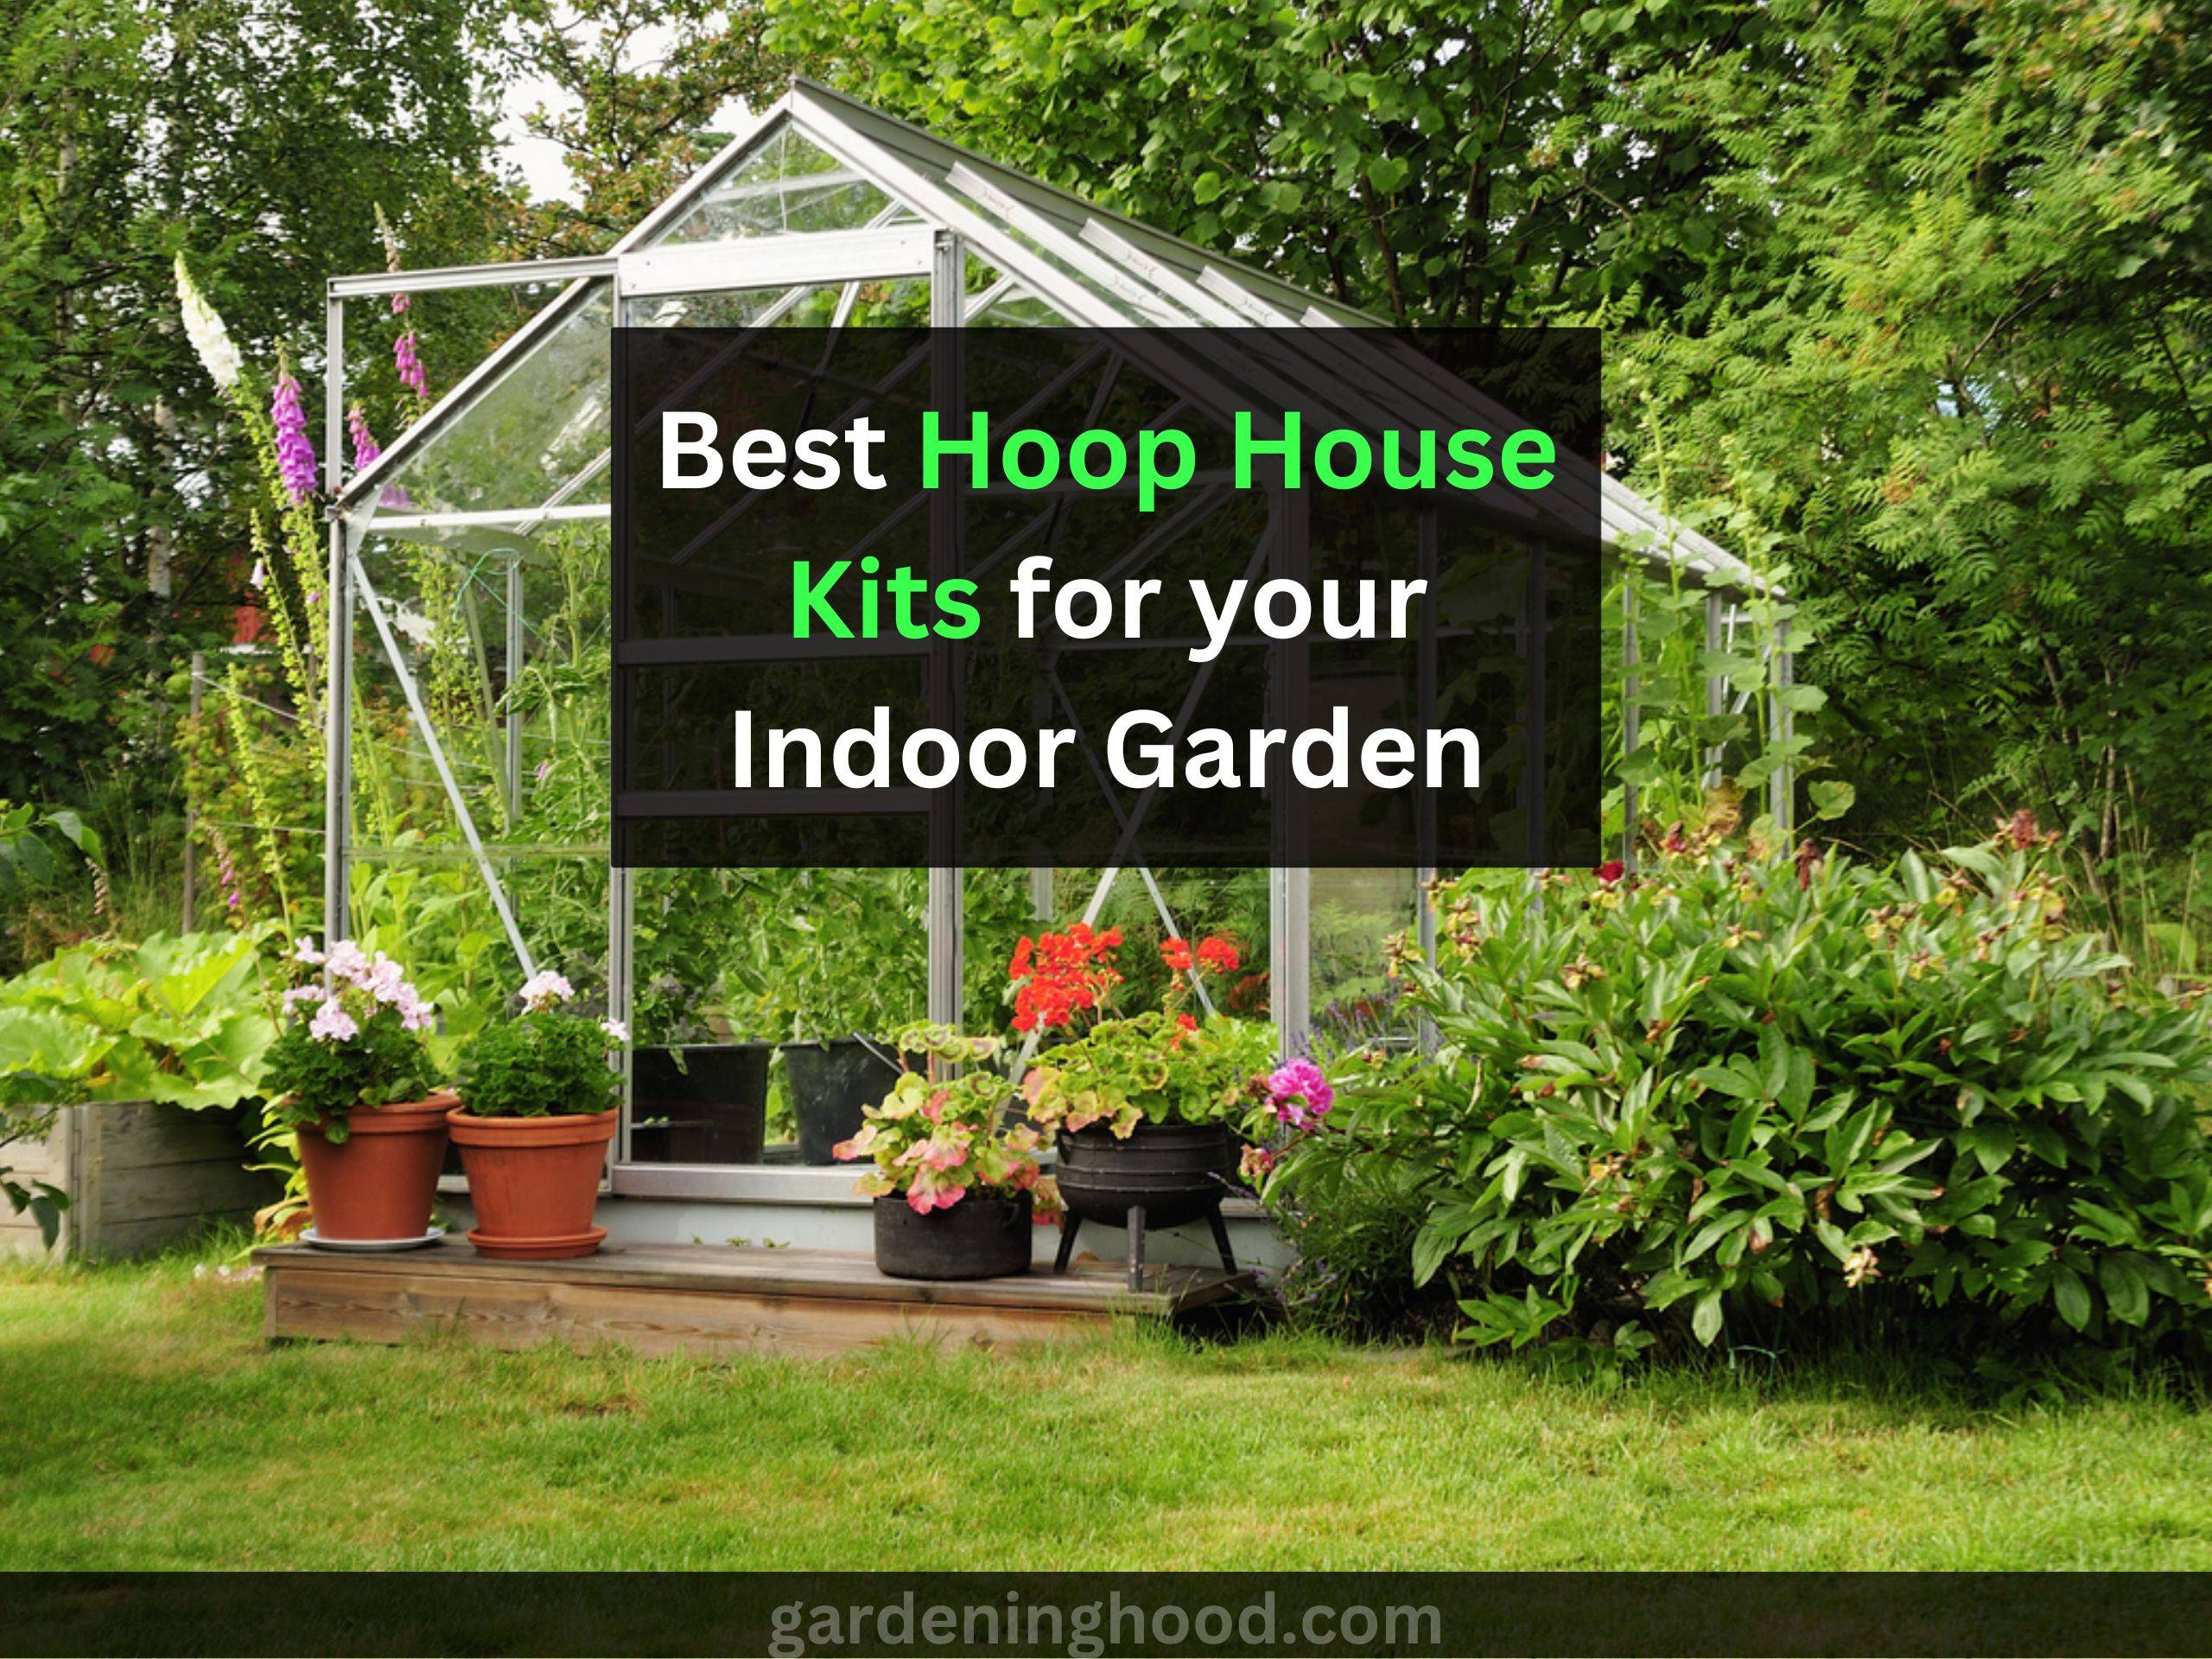 Best Hoop House Kits for your Indoor Garden